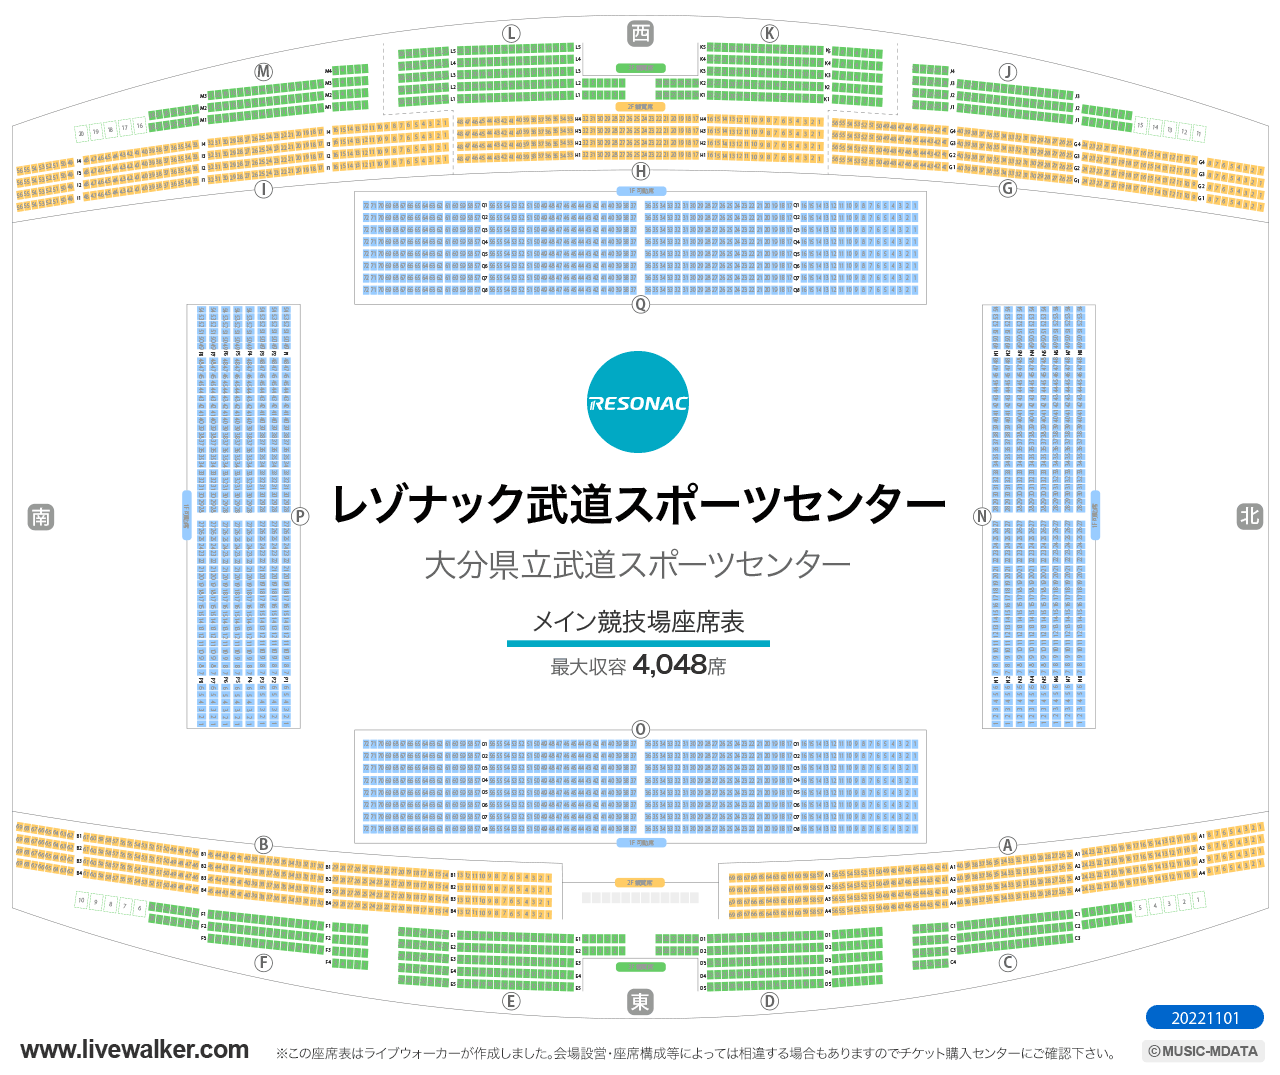 昭和電工武道スポーツセンター多目的競技場の座席表